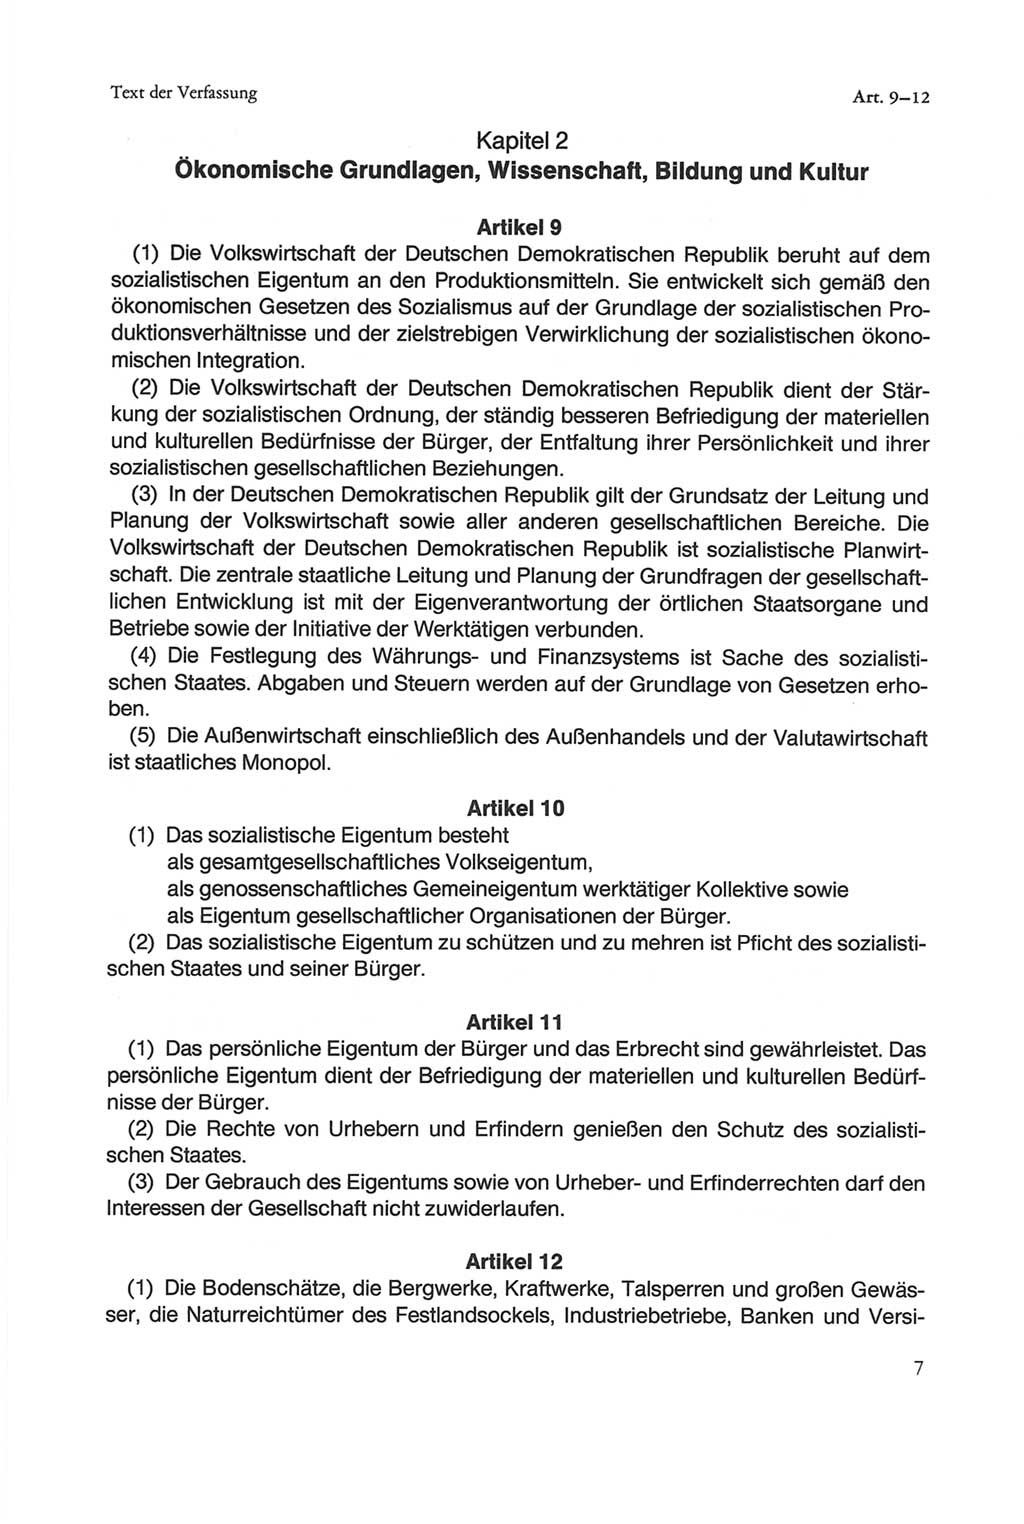 Die sozialistische Verfassung der Deutschen Demokratischen Republik (DDR), Kommentar mit einem Nachtrag 1997, Seite 7 (Soz. Verf. DDR Komm. Nachtr. 1997, S. 7)